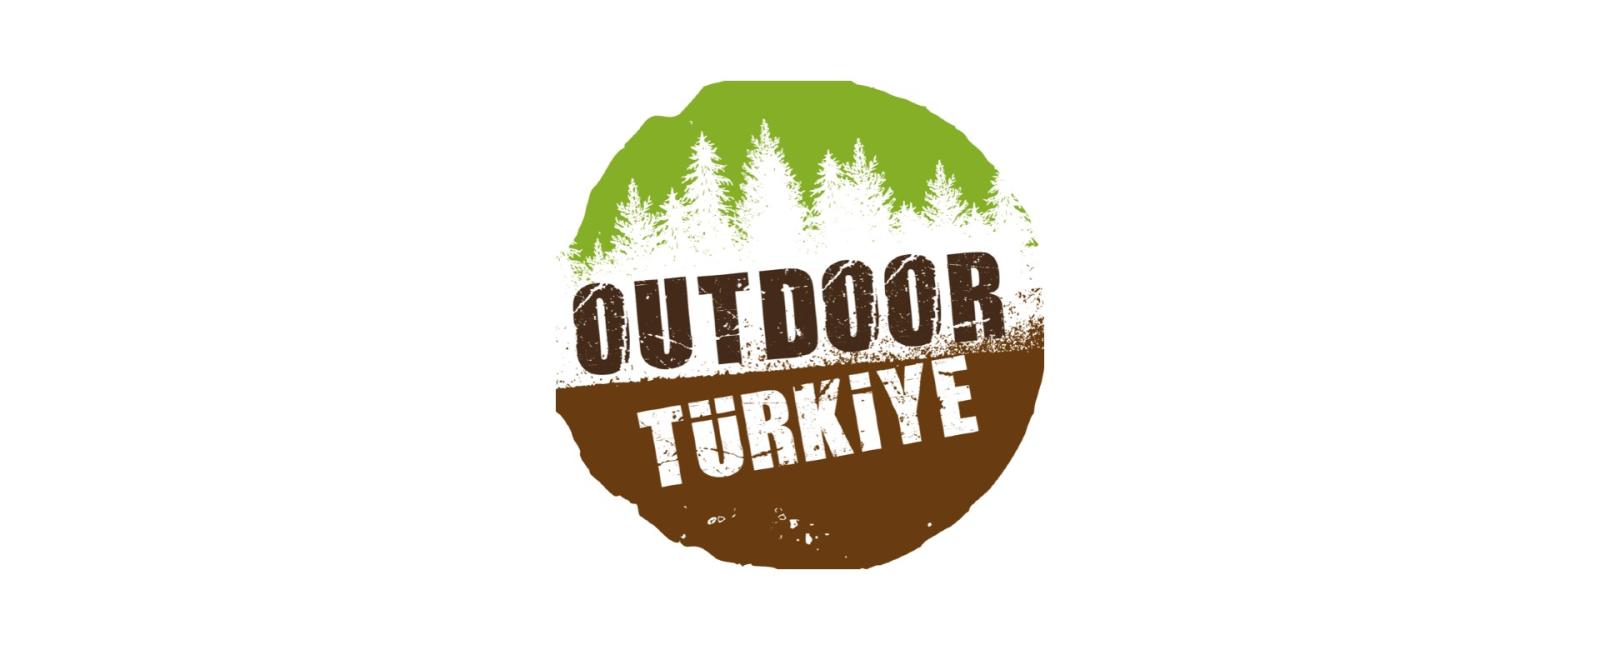 تطبيق المغامرات Outdoor turkey 